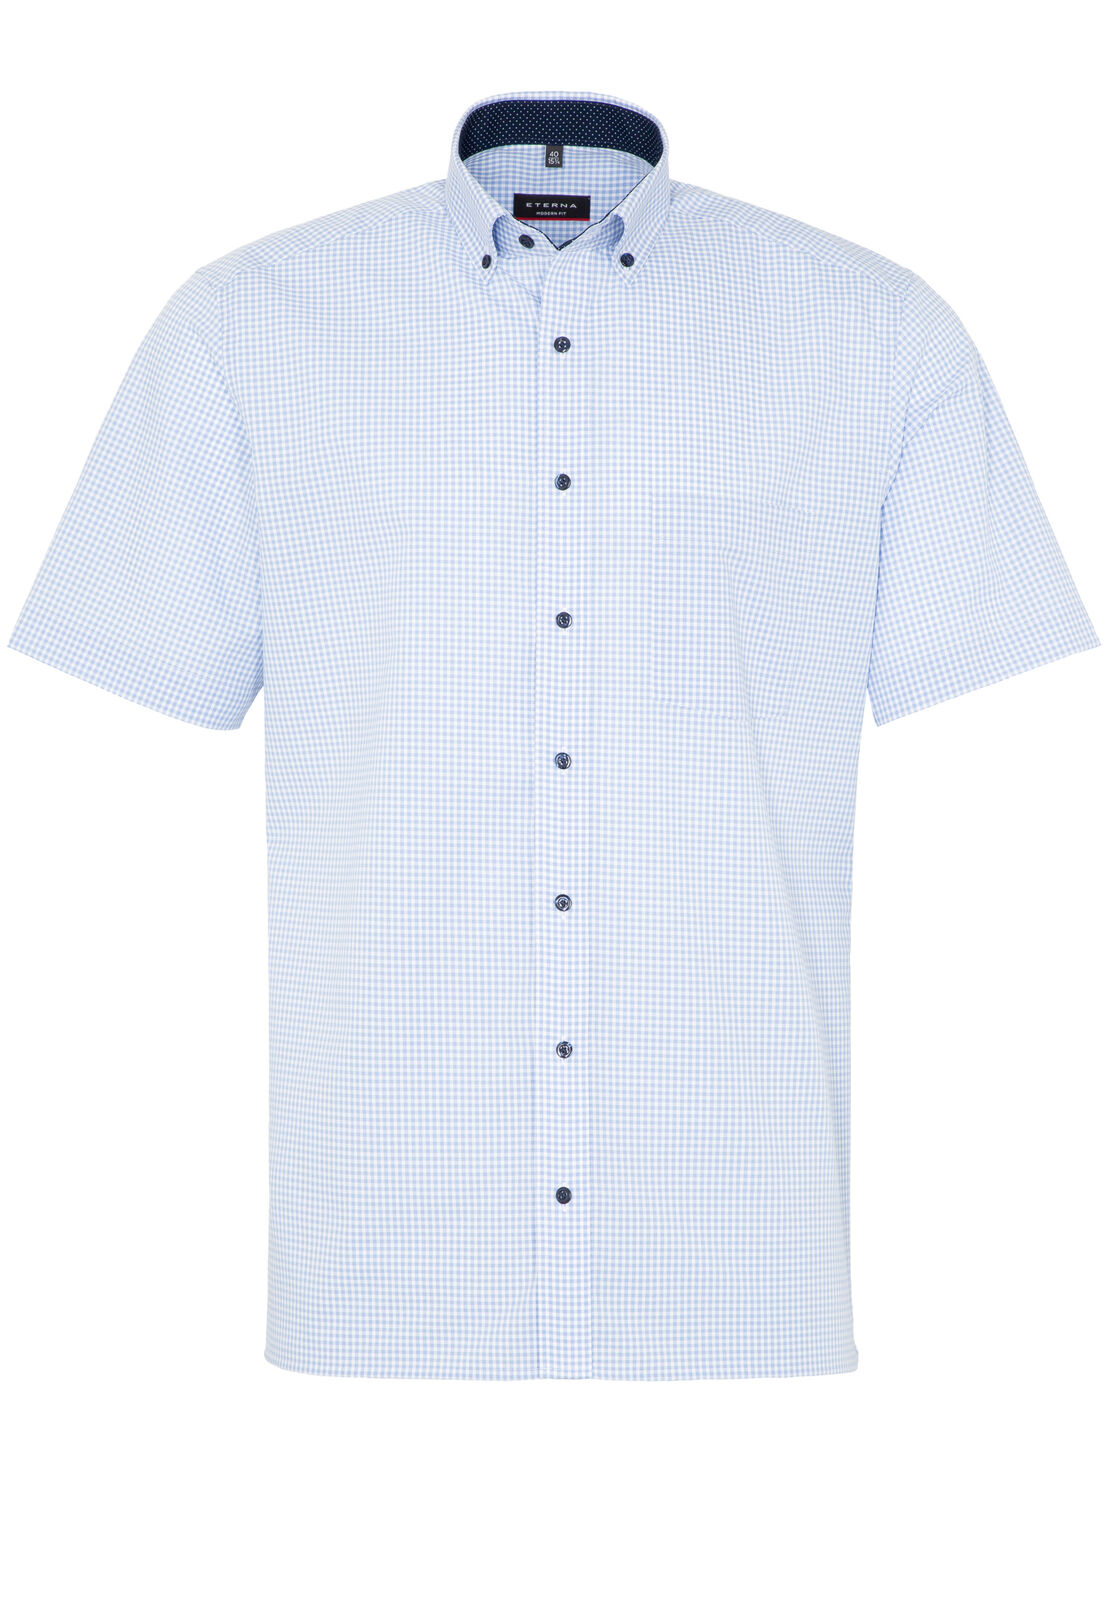 Eterna Short Sleeve Shirt Light Blue Check 8913-12-c143 - Modern Fit Shirt Men